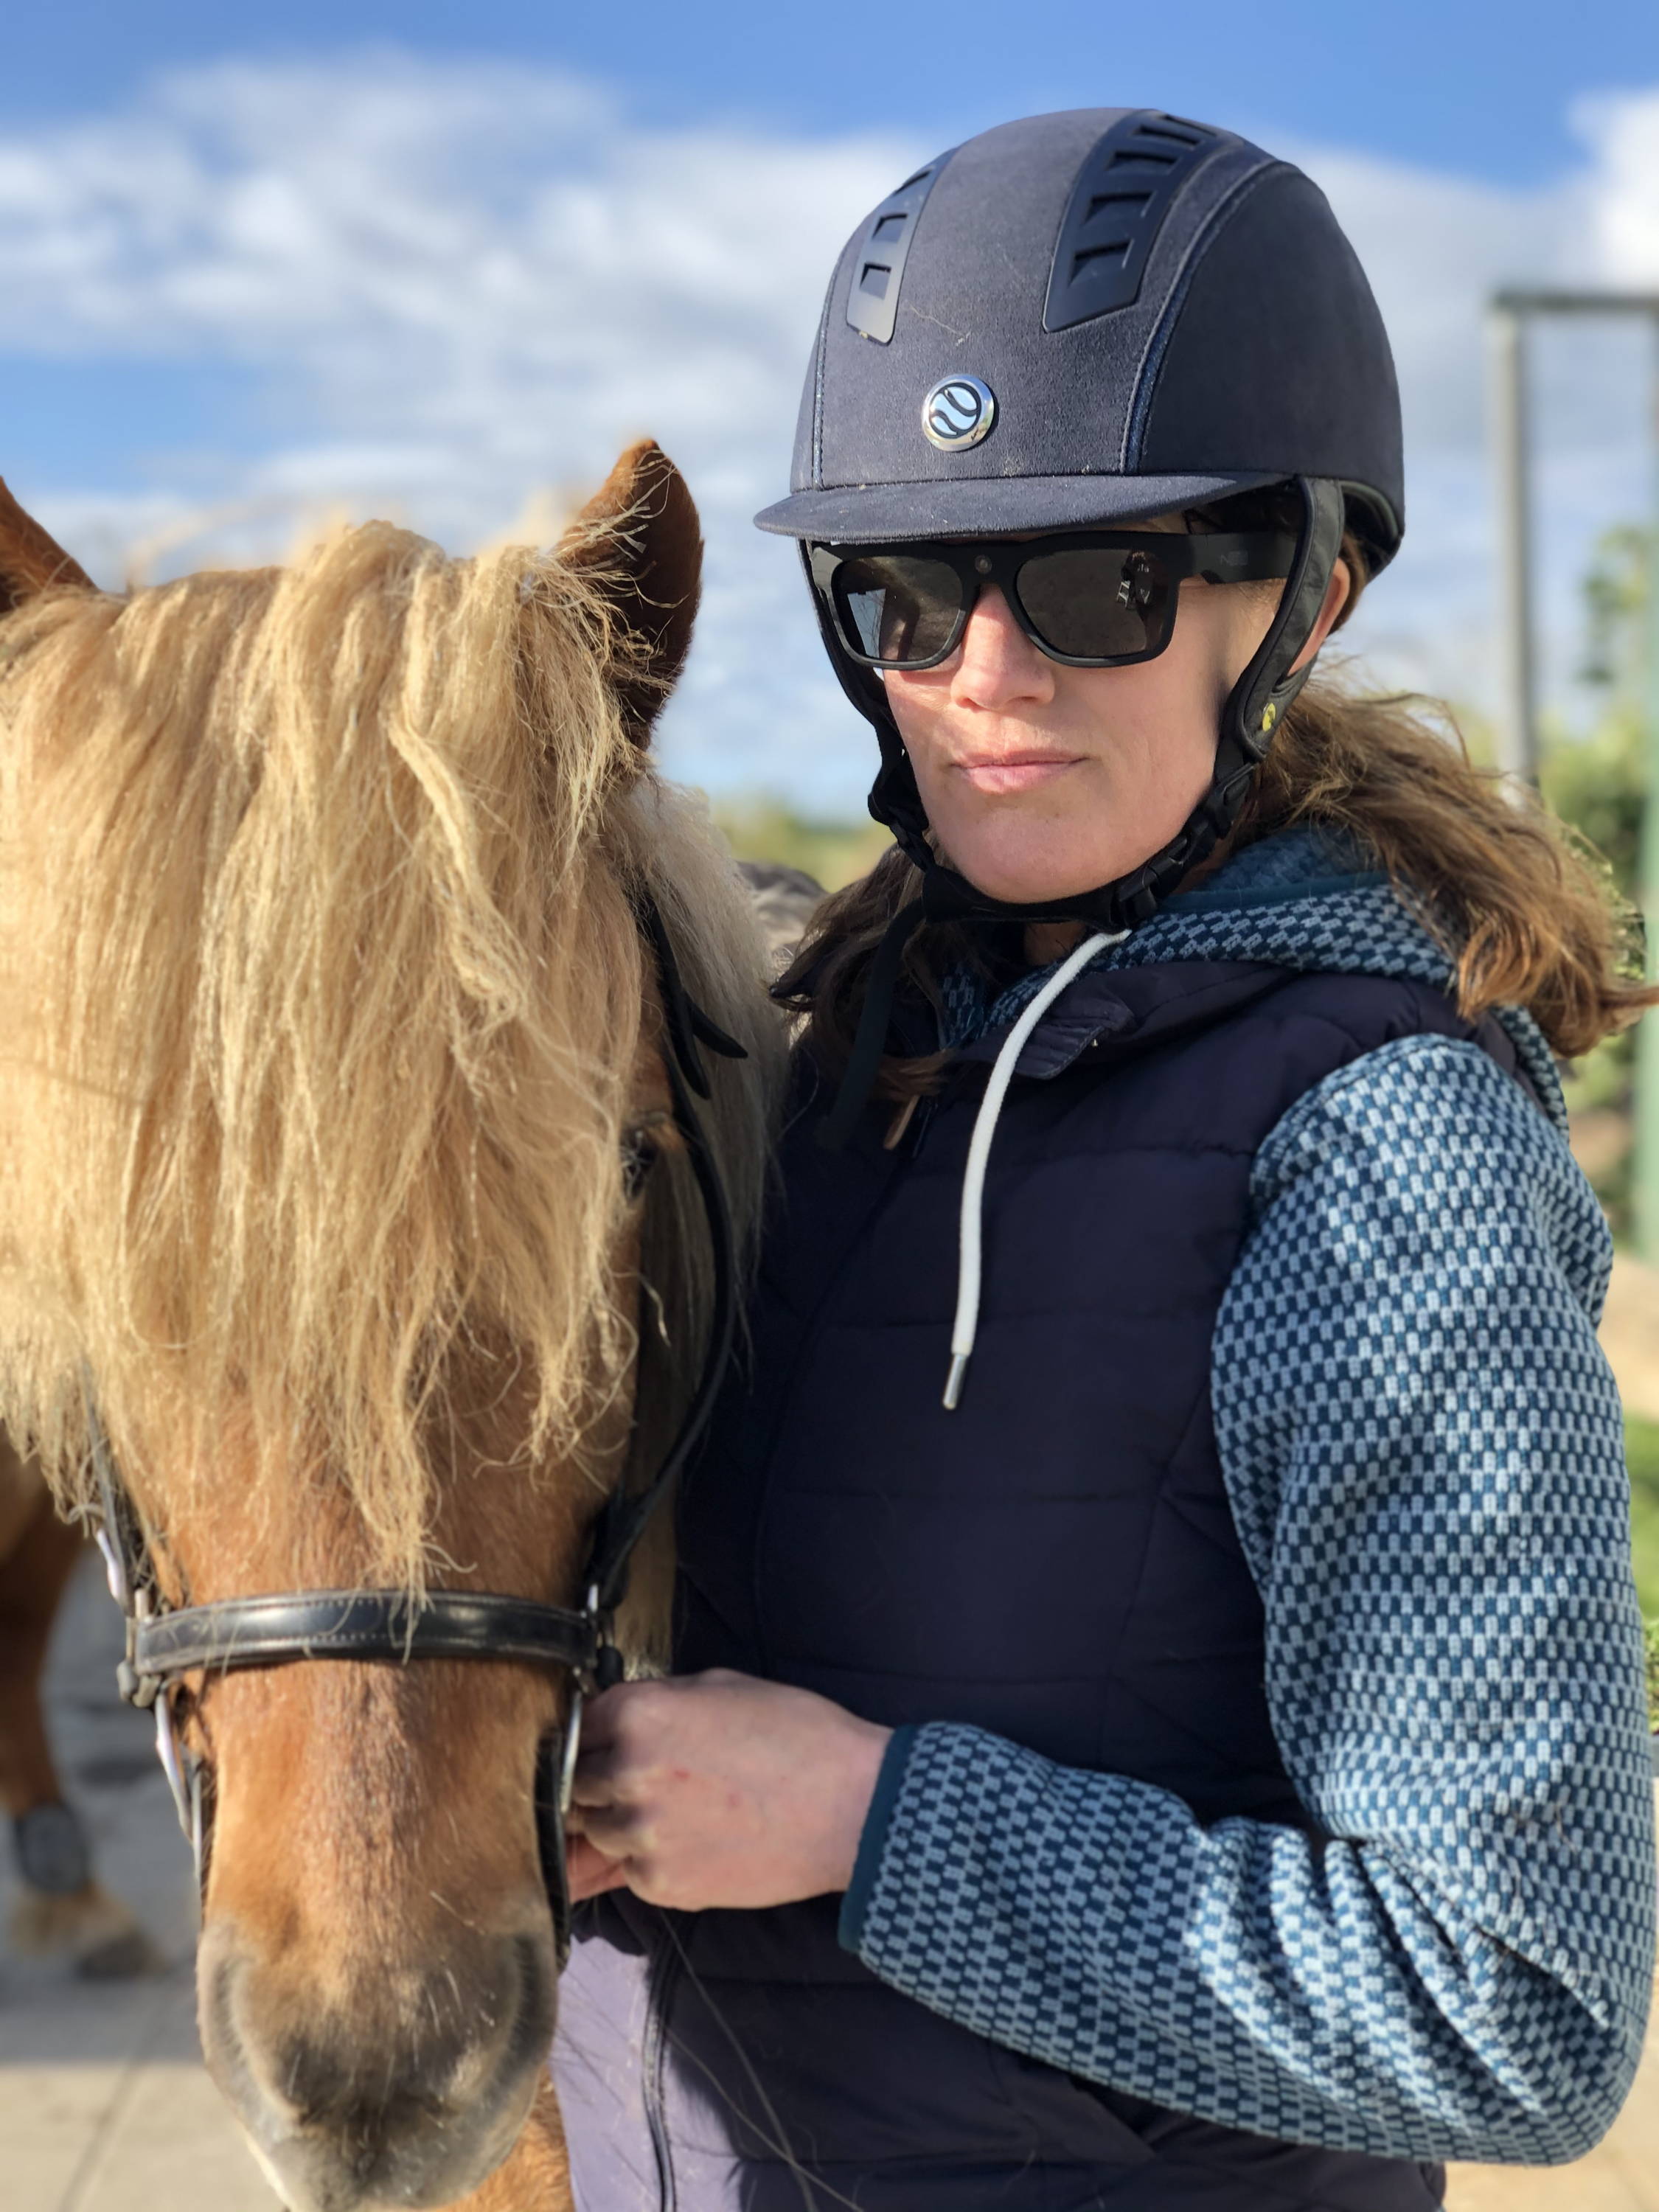 Camilla Jørgensen står med kamera solbriller på sammen med sin hest efter ridning.